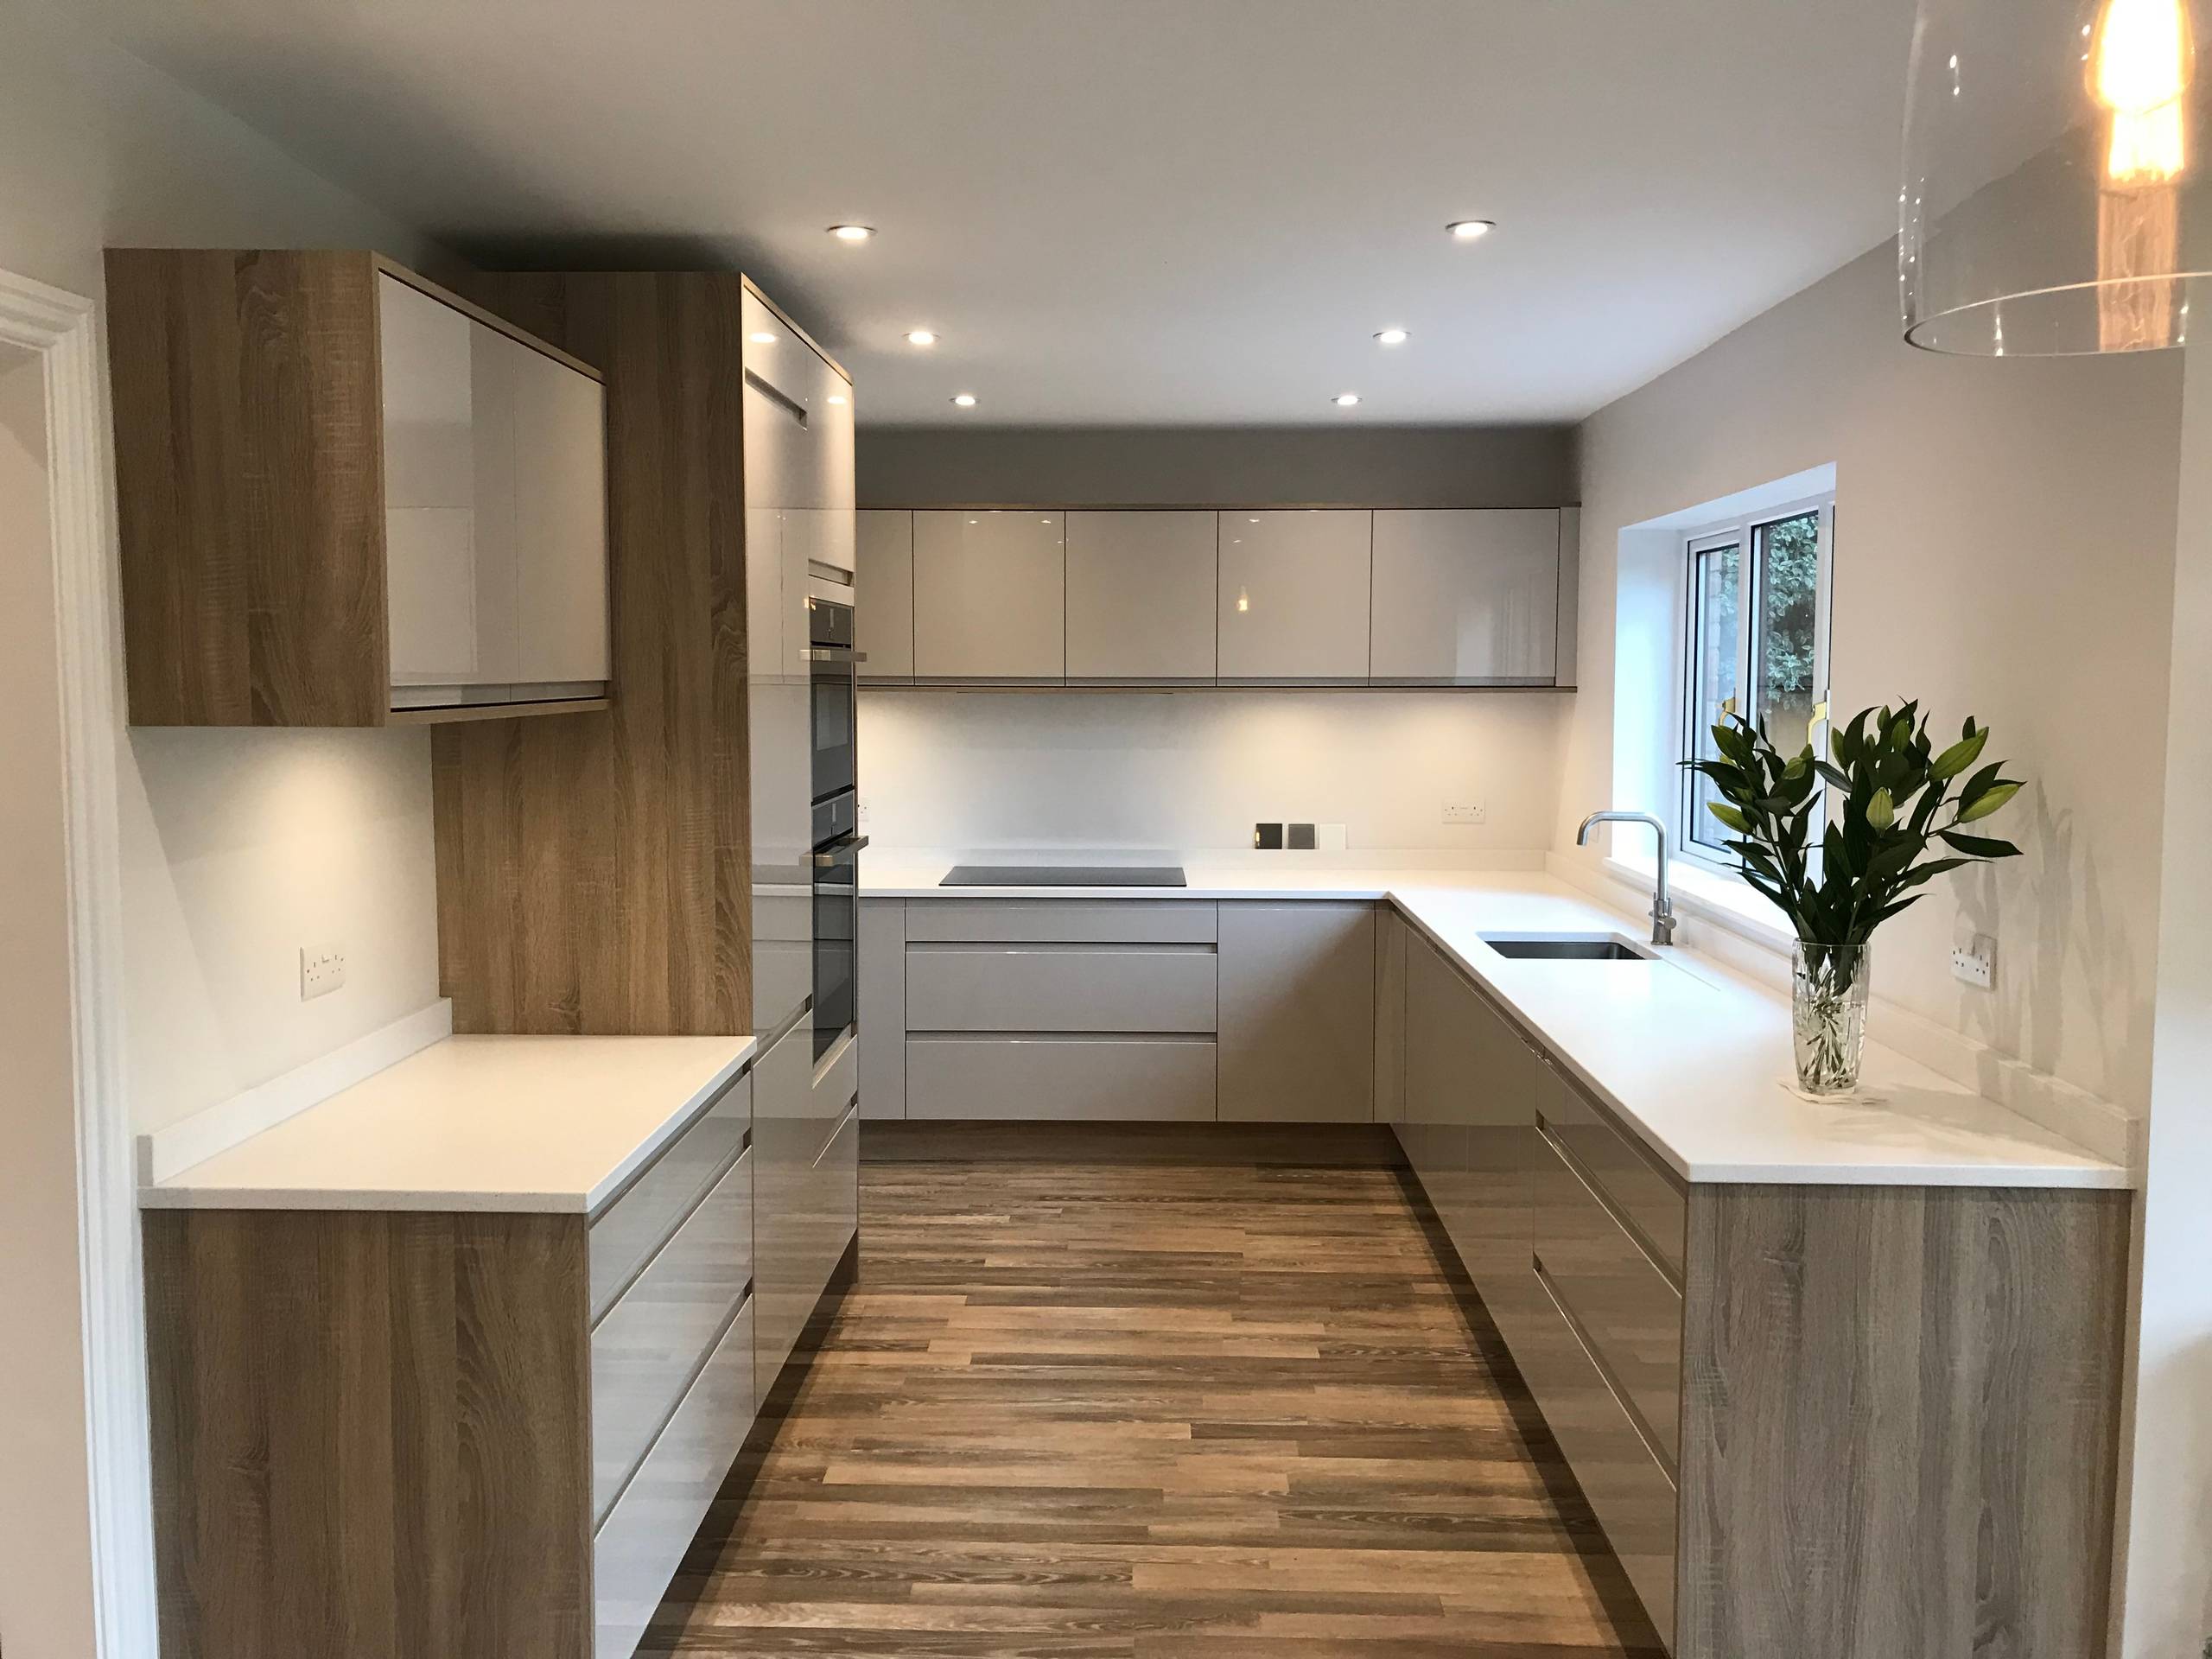 Kitchen & Ground Floor Refurbishment Project in Weybridge Surrey